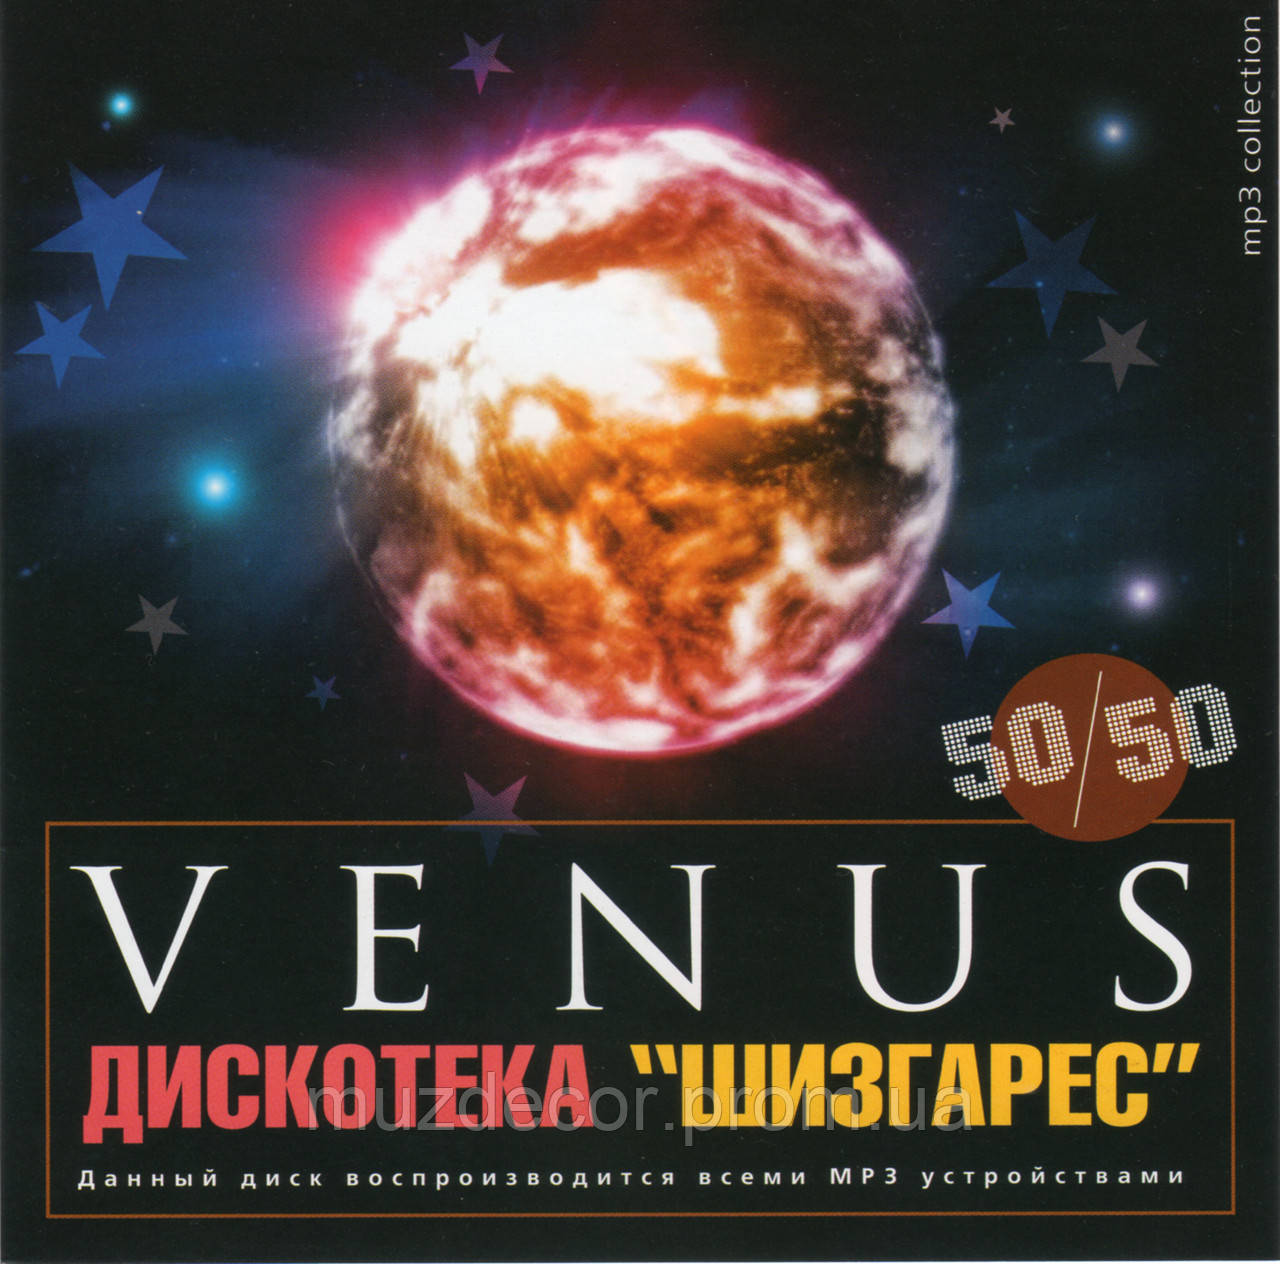 Купить – дискотека 80-х в современной обработке 50 на 50 MP3 по Украине - 1614321219